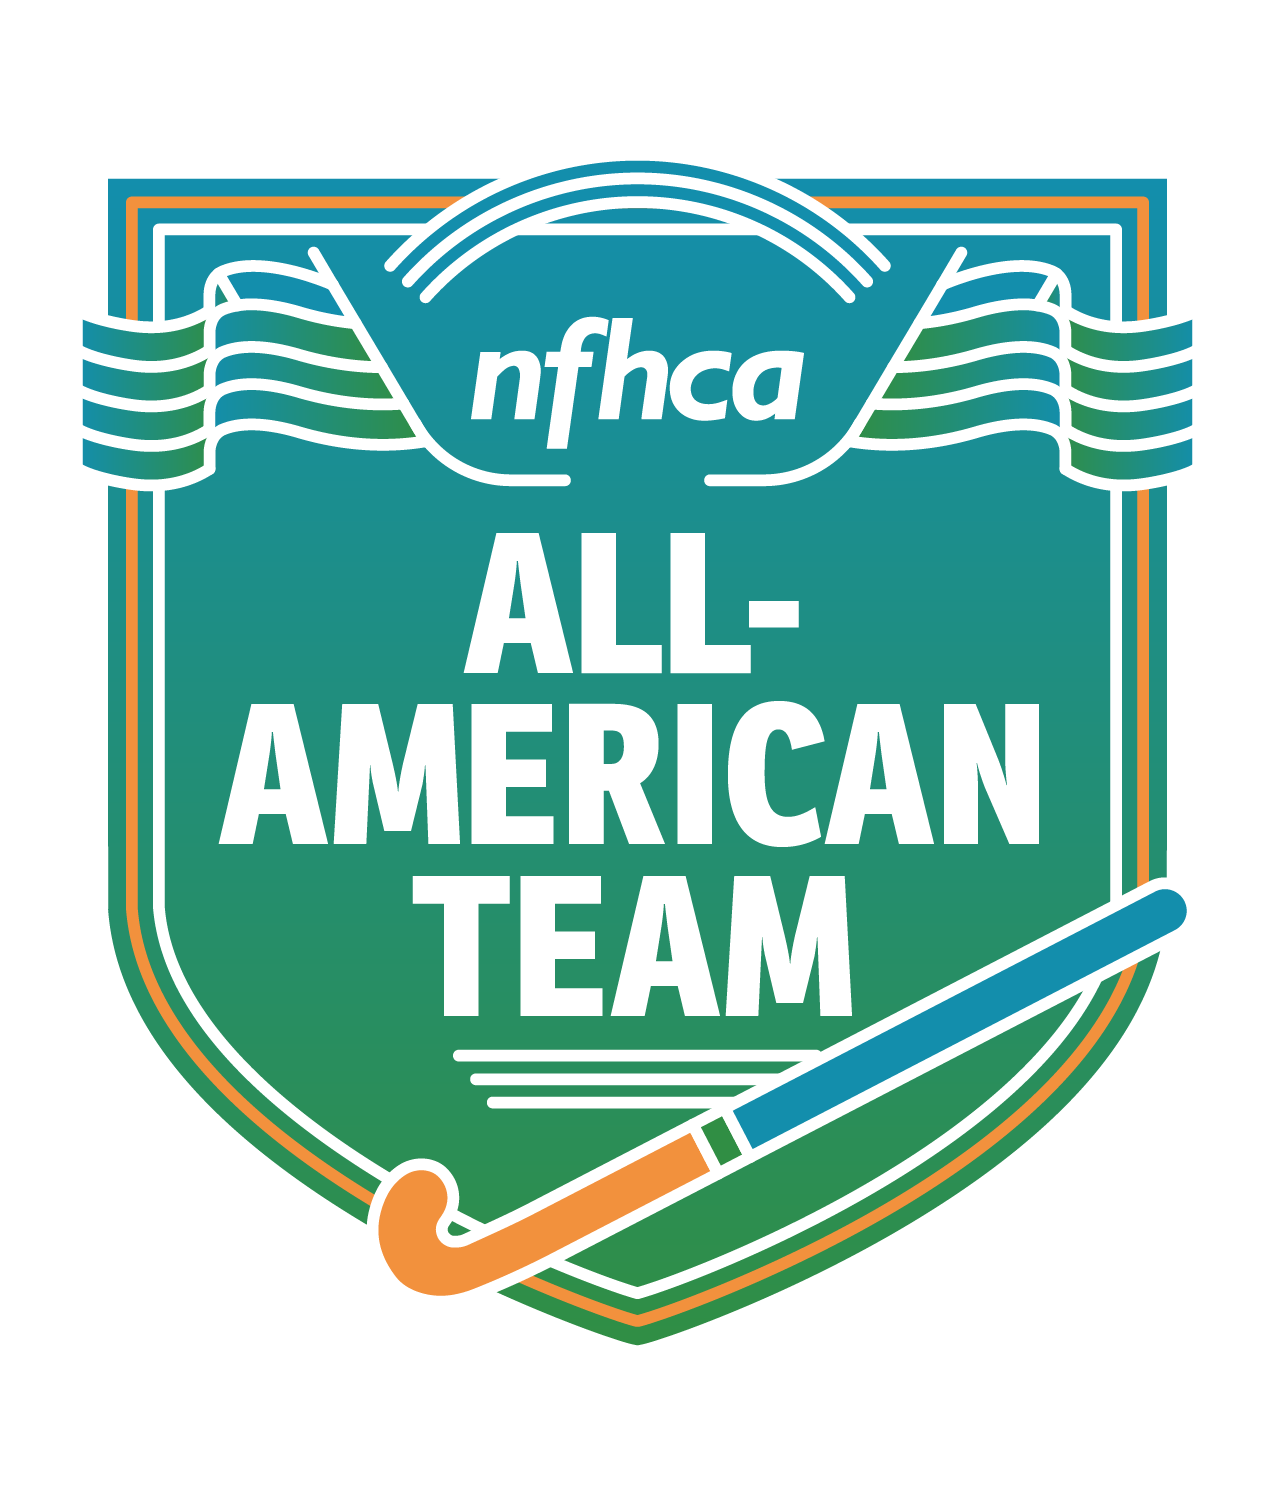 NFHCA All-American